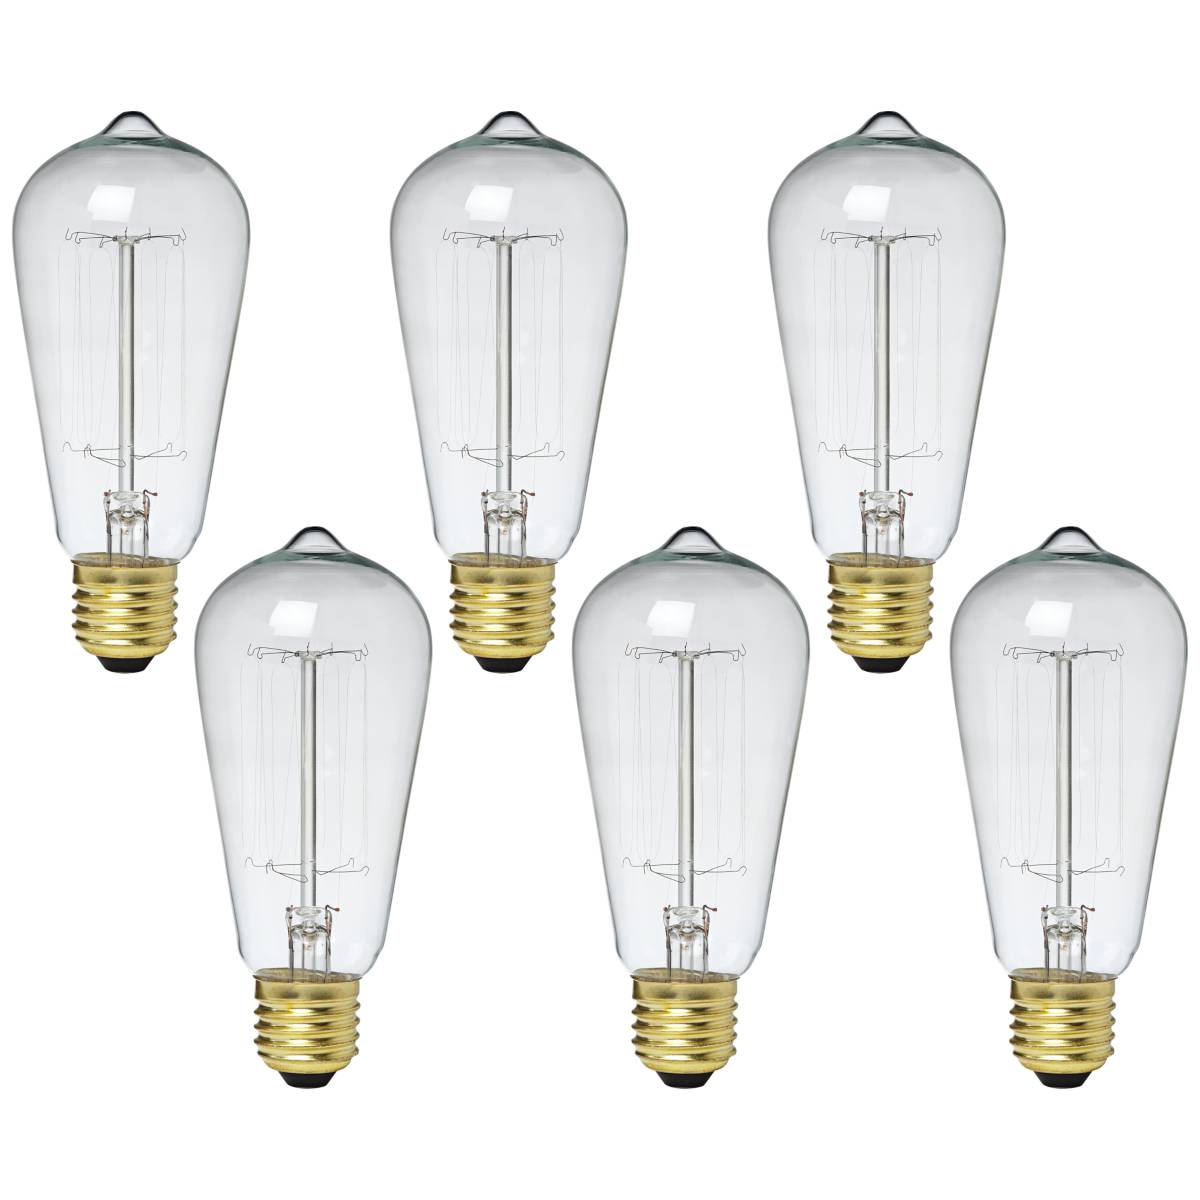 60 watt bulb lumens